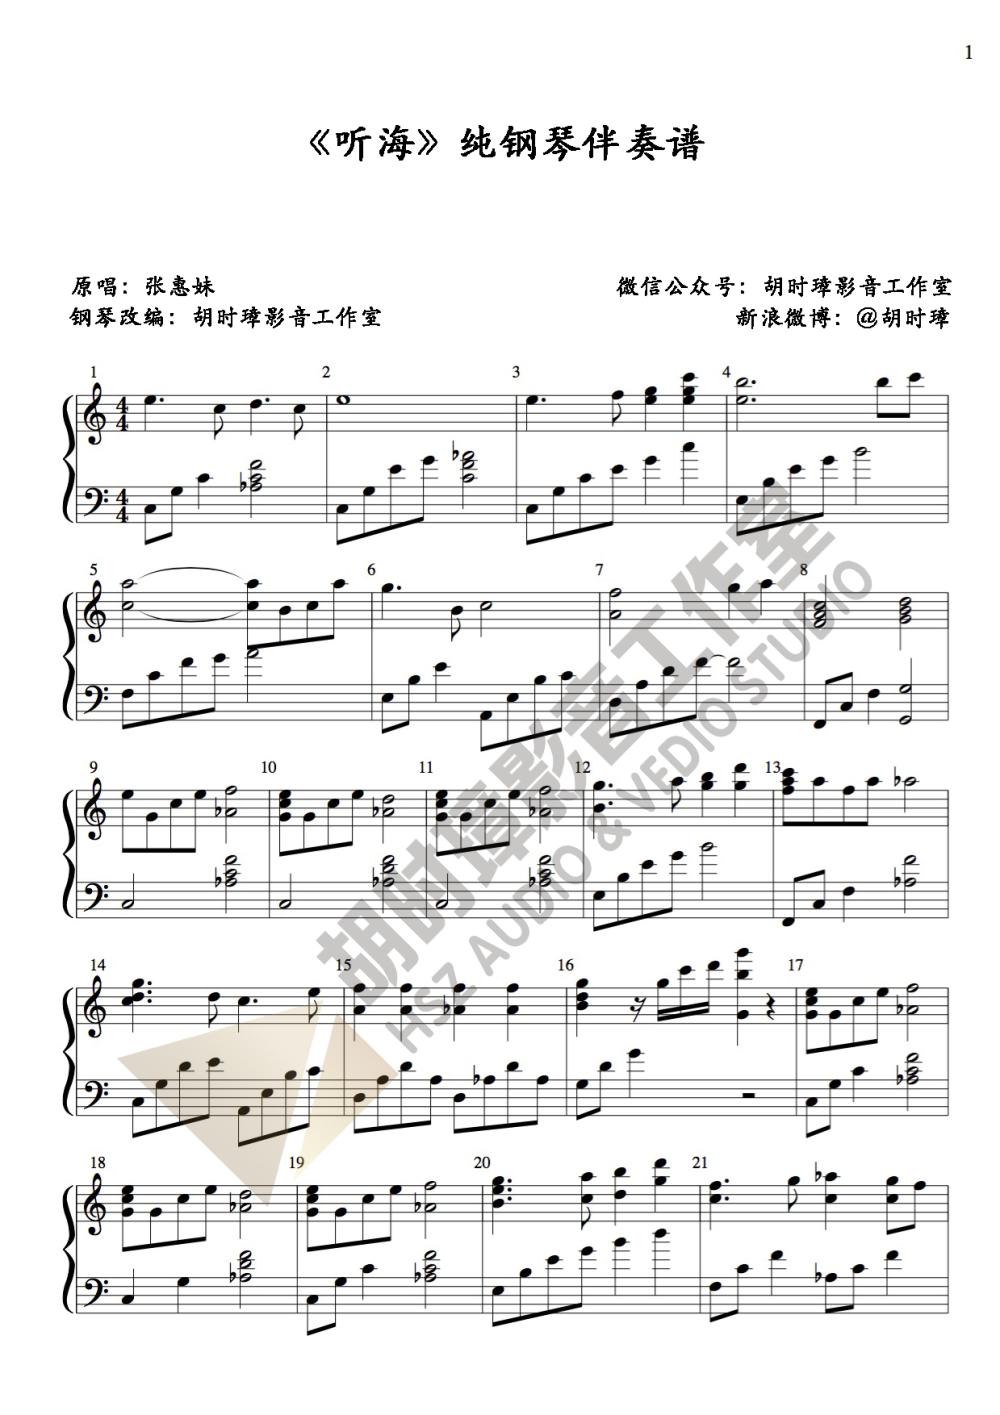 张惠妹《听海》纯伴奏钢琴谱-胡时璋影音工作室出品